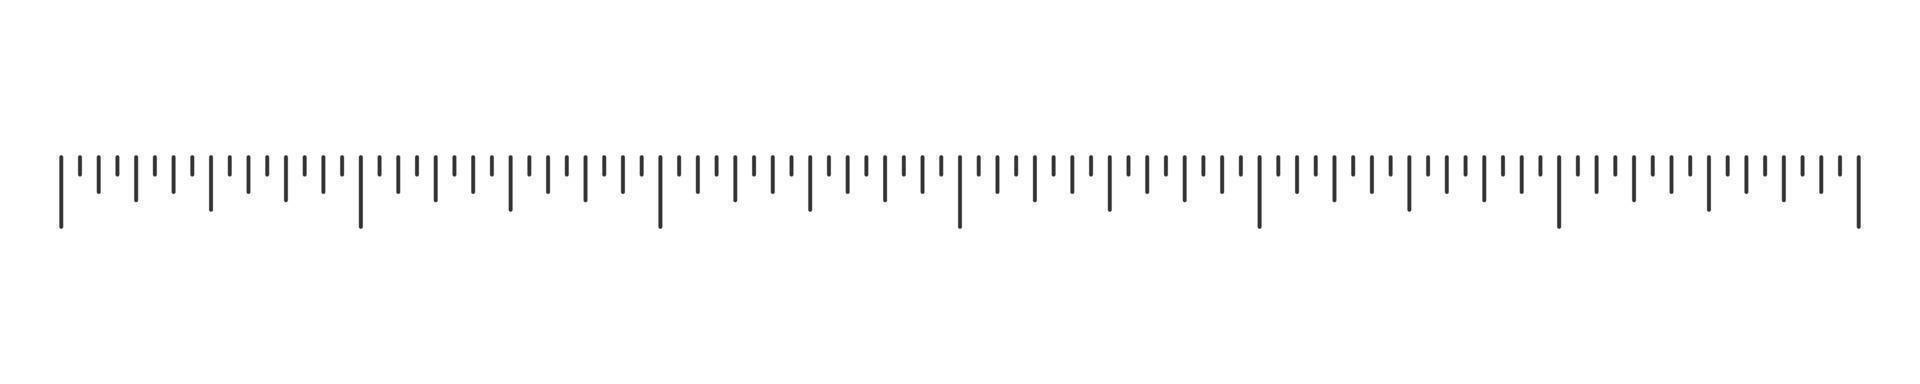 horizontal Lineal oder Thermometer Skala. Vorlage zum meteorologisch, medizinisch oder Mathematik Messung Werkzeug vektor